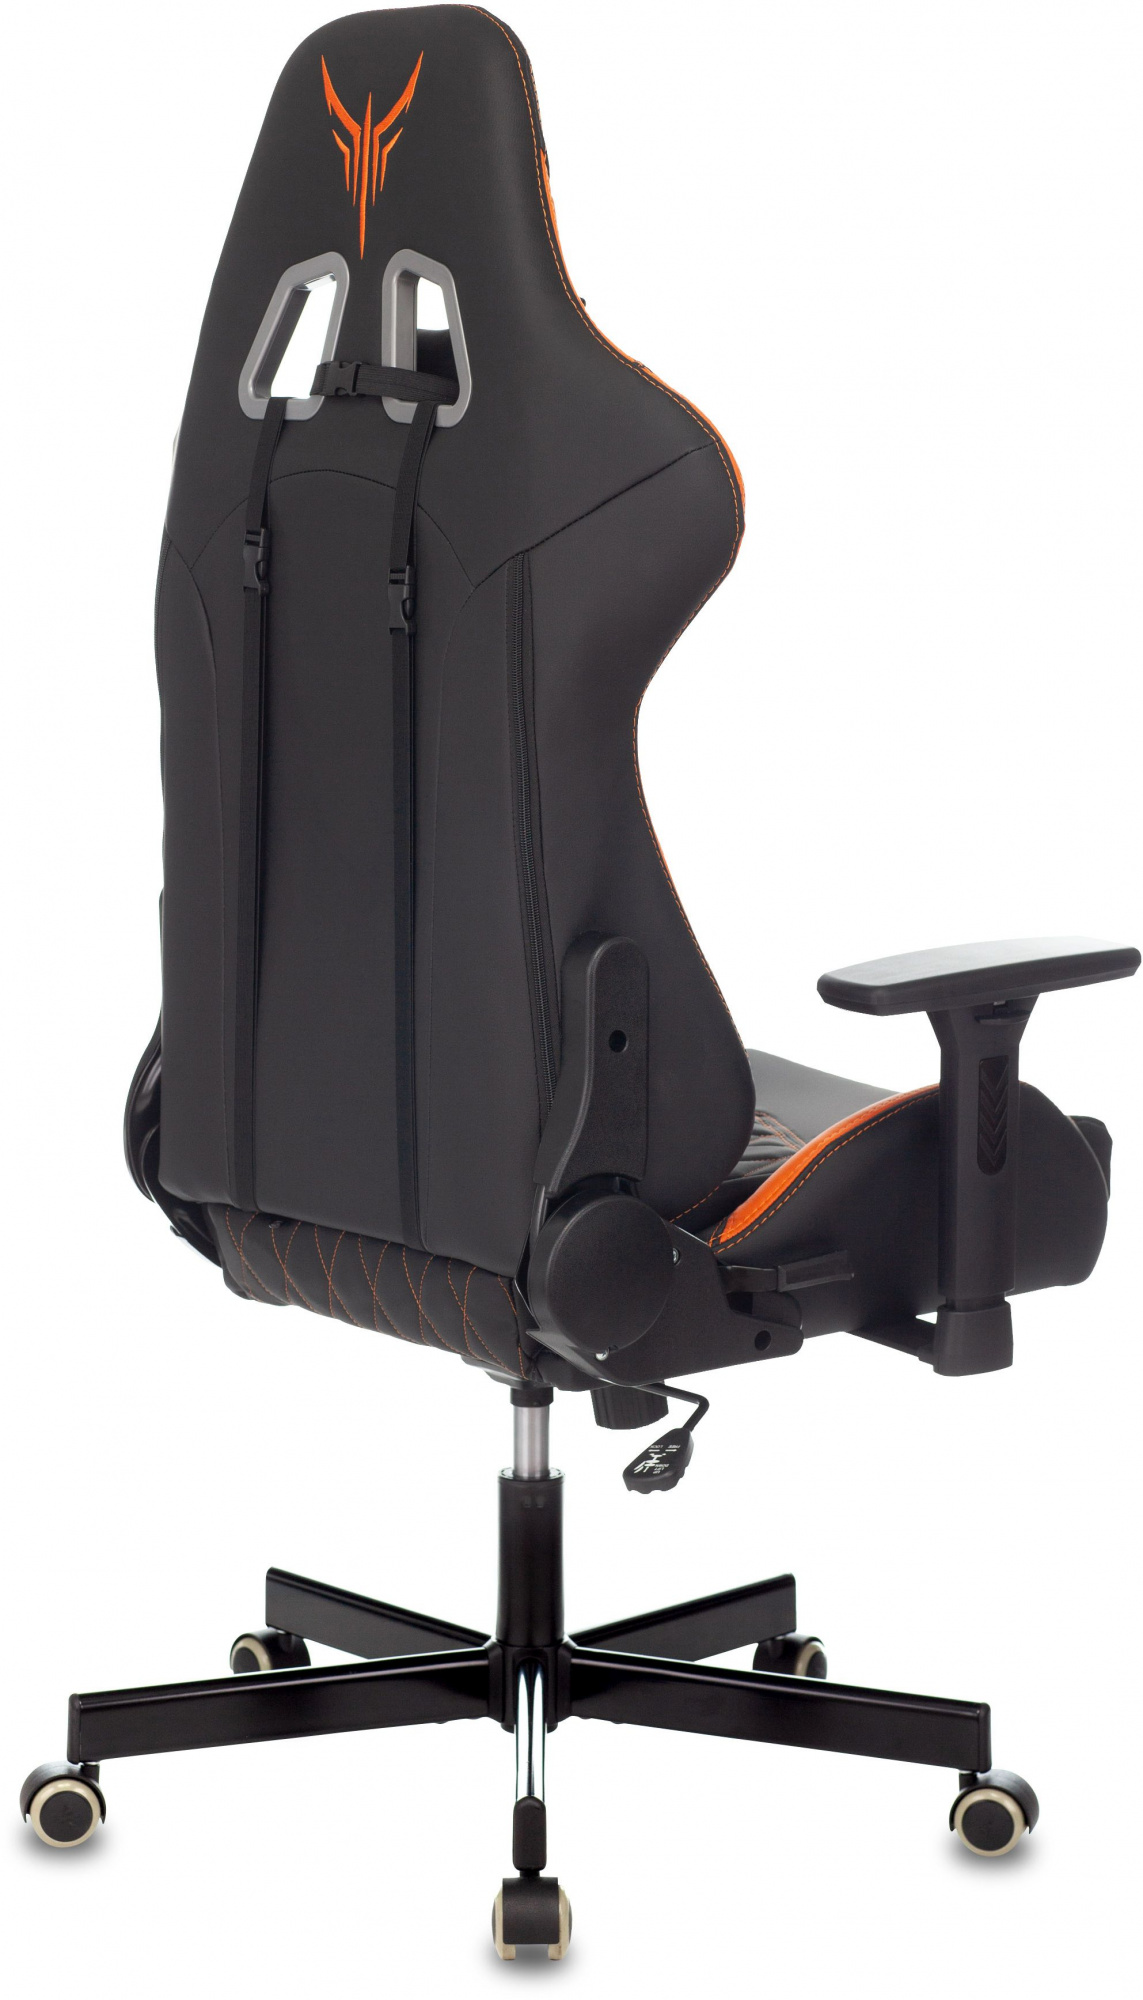 Кресло игровое Knight Armor, обивка: эко.кожа, цвет: черный/оранжевый, рисунок ромбик (KNIGHT ARMOR BO) от магазина Buro.store